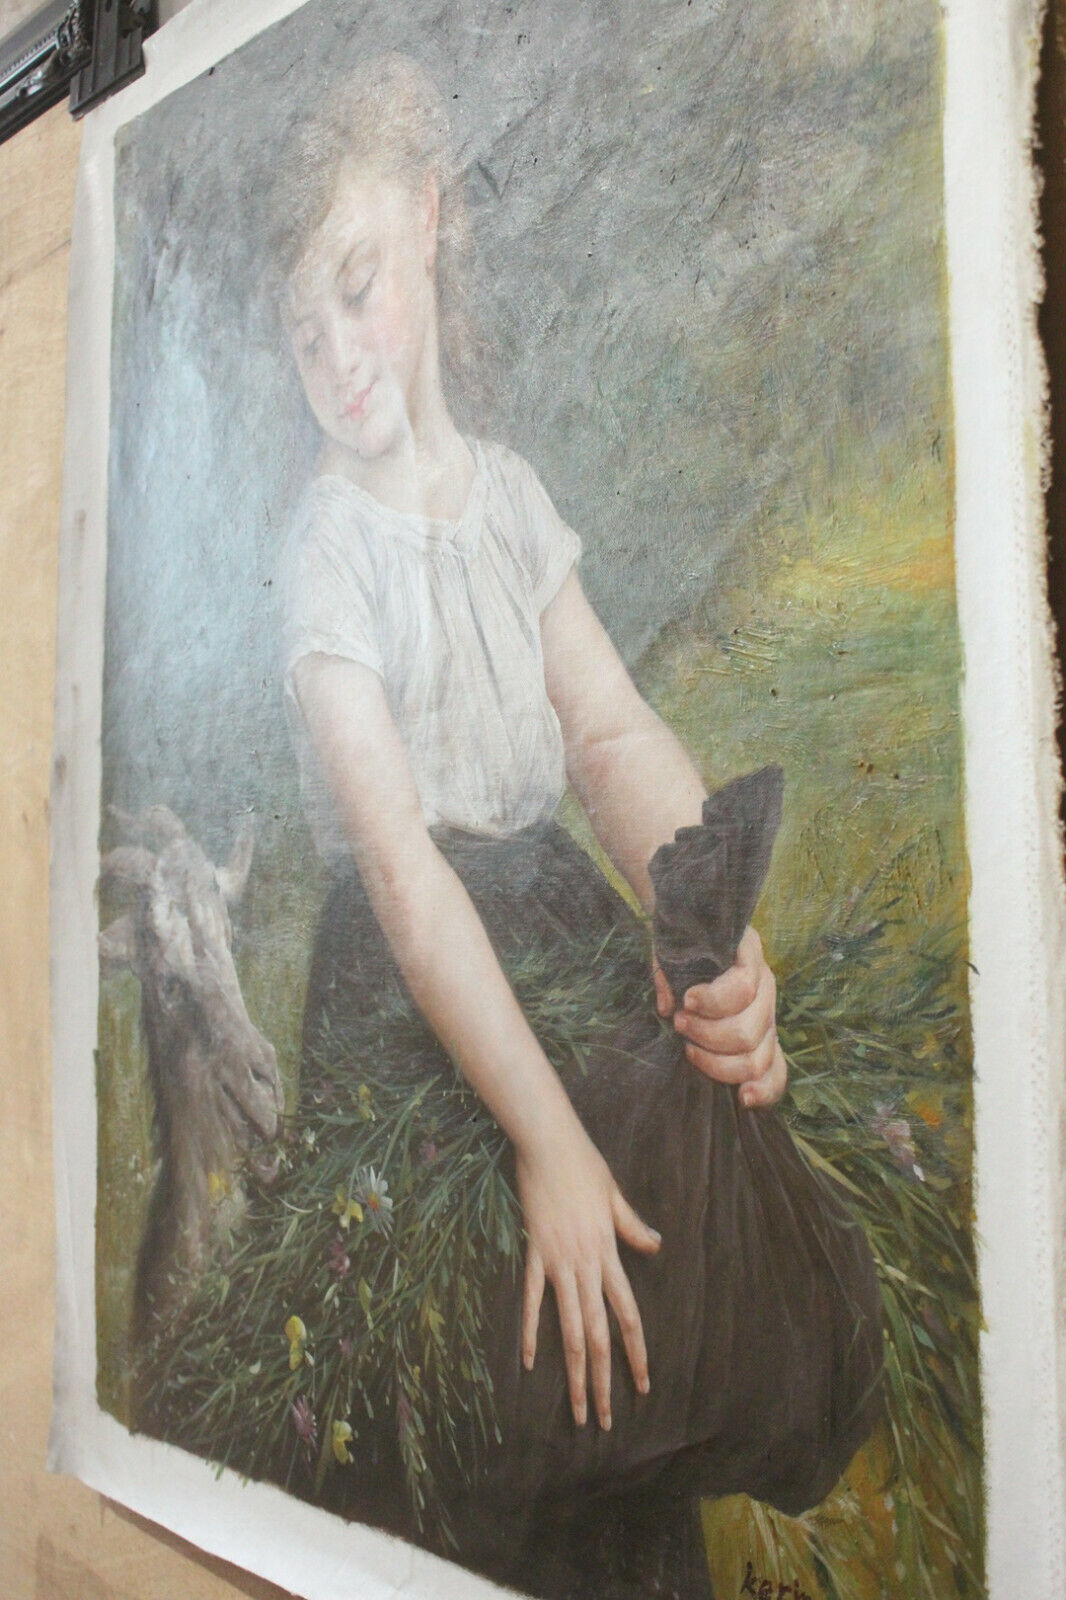 Reproduction d'art Emile munier fille et chèvre peinture huile sur toile peinte